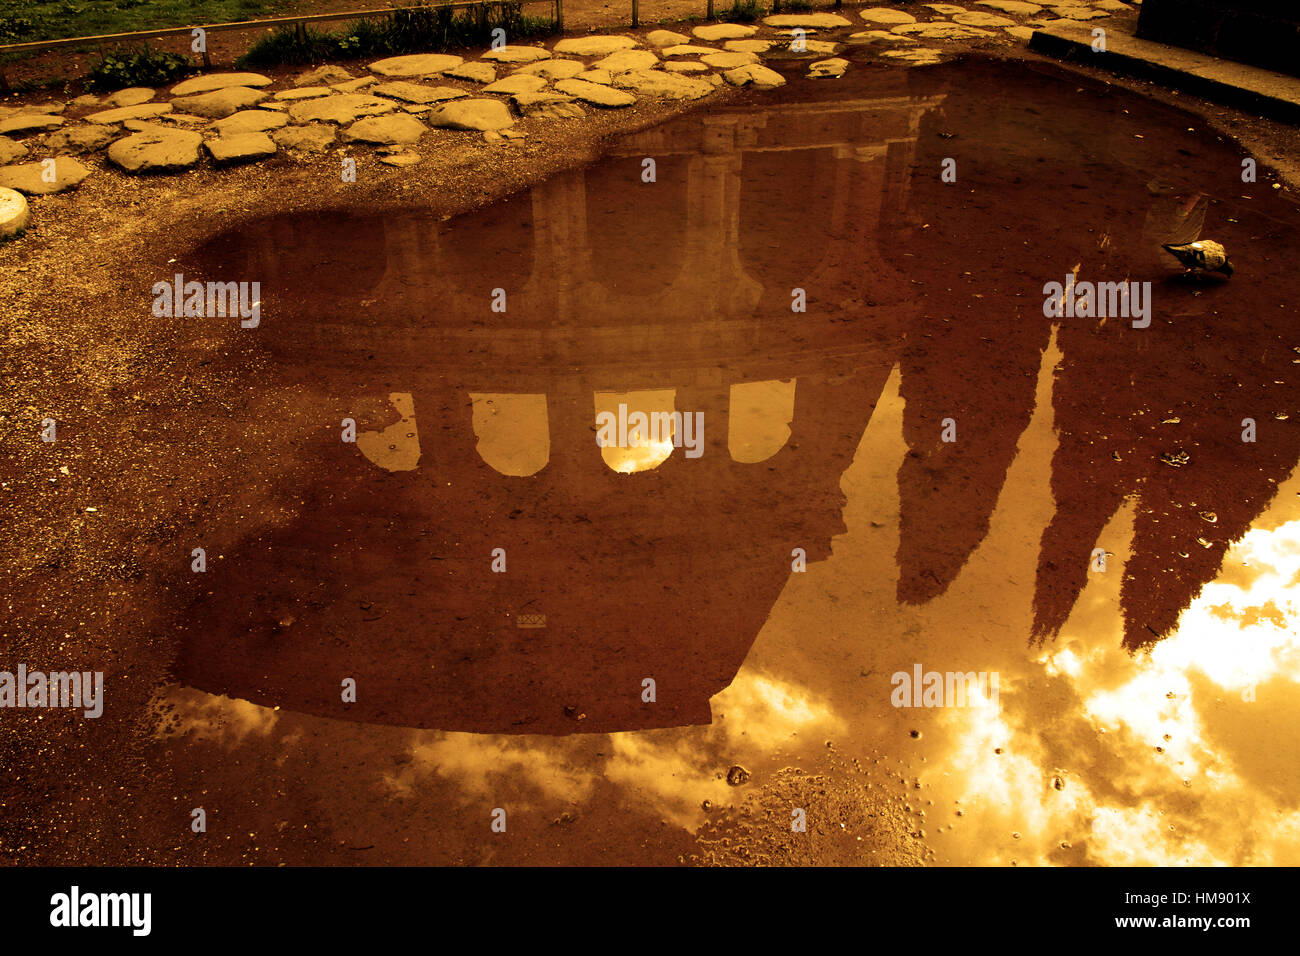 Roma, Italia - Il Colosseo riflesso in una pozzanghera Stock Photo